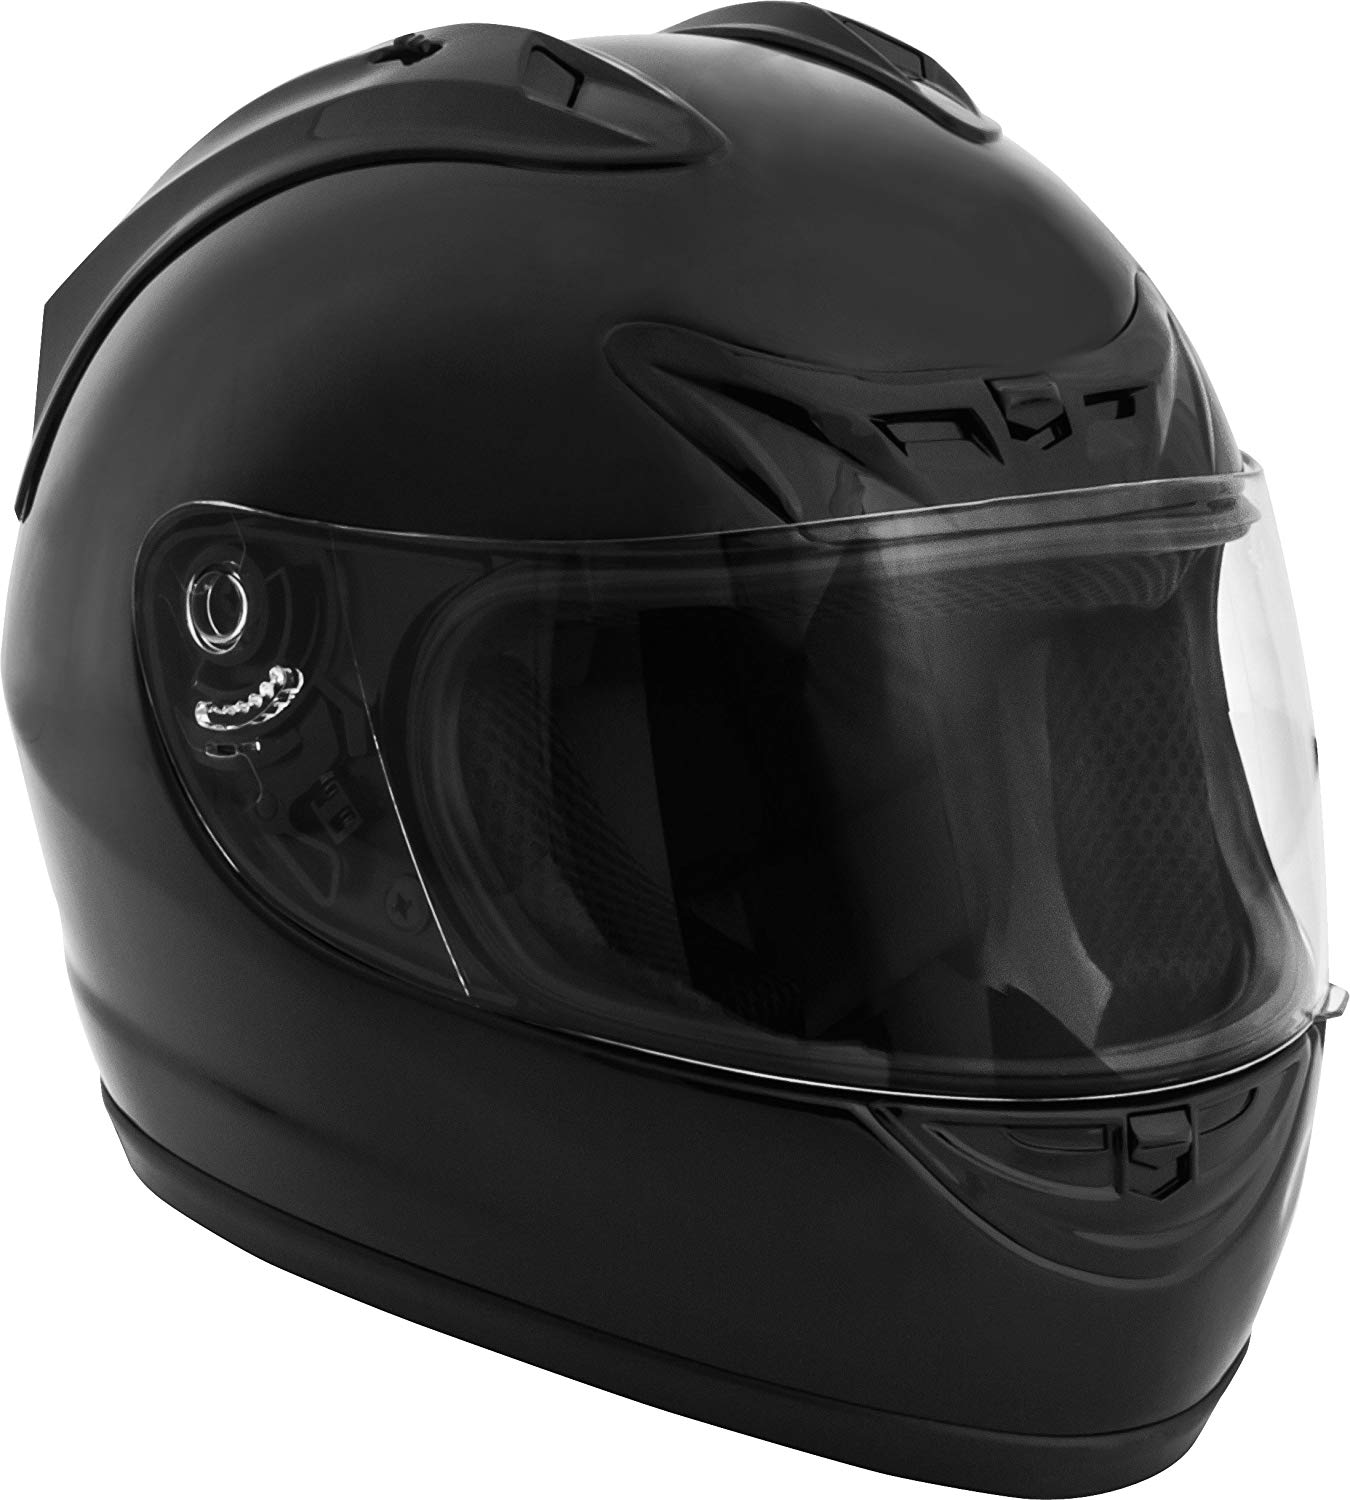 Quietest Motorcycle Helmet Under 20011 Best Quiet Picks Soundproof